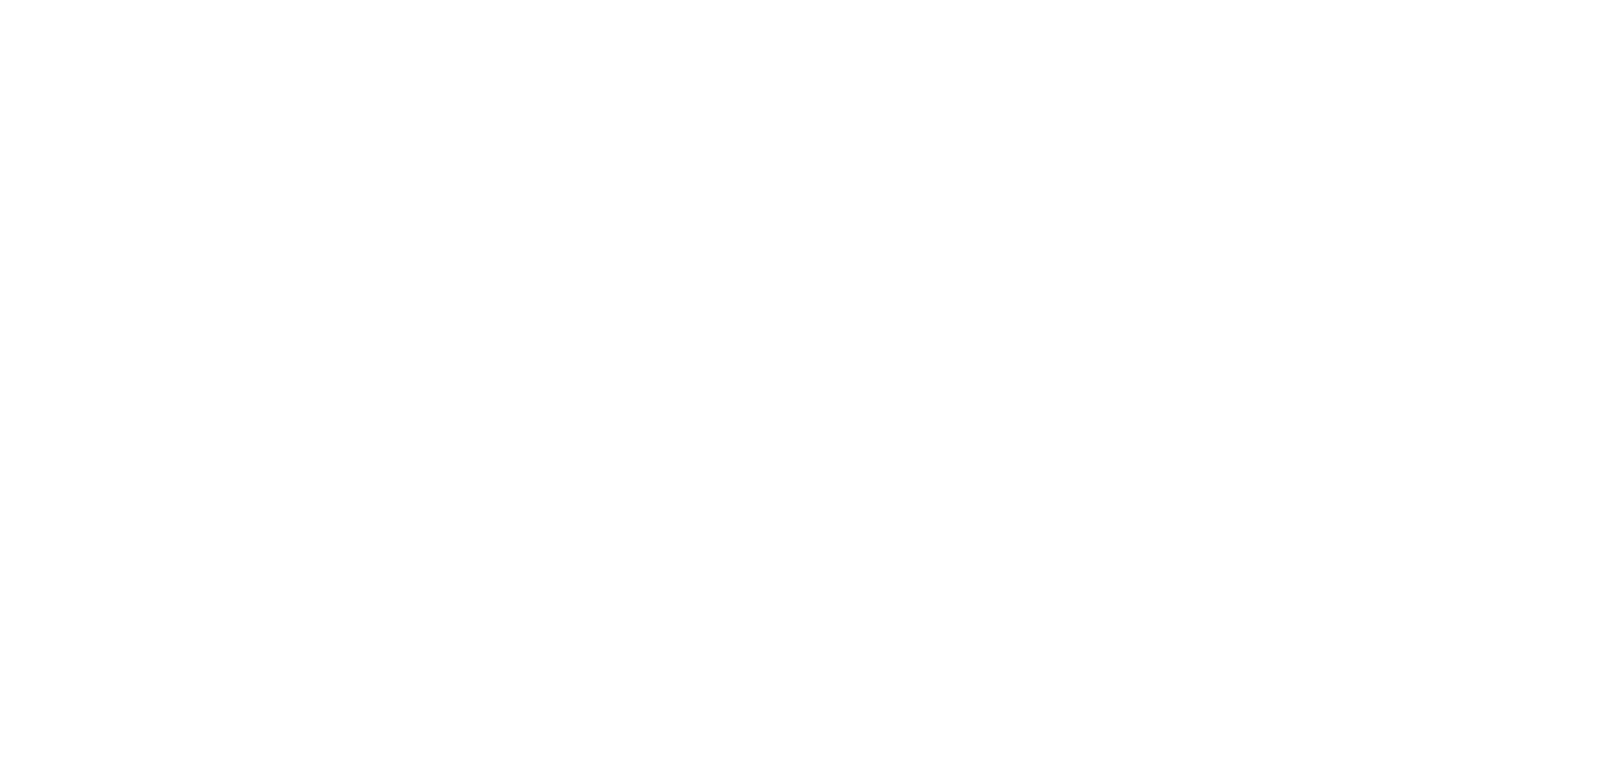 175 MAIN Logo